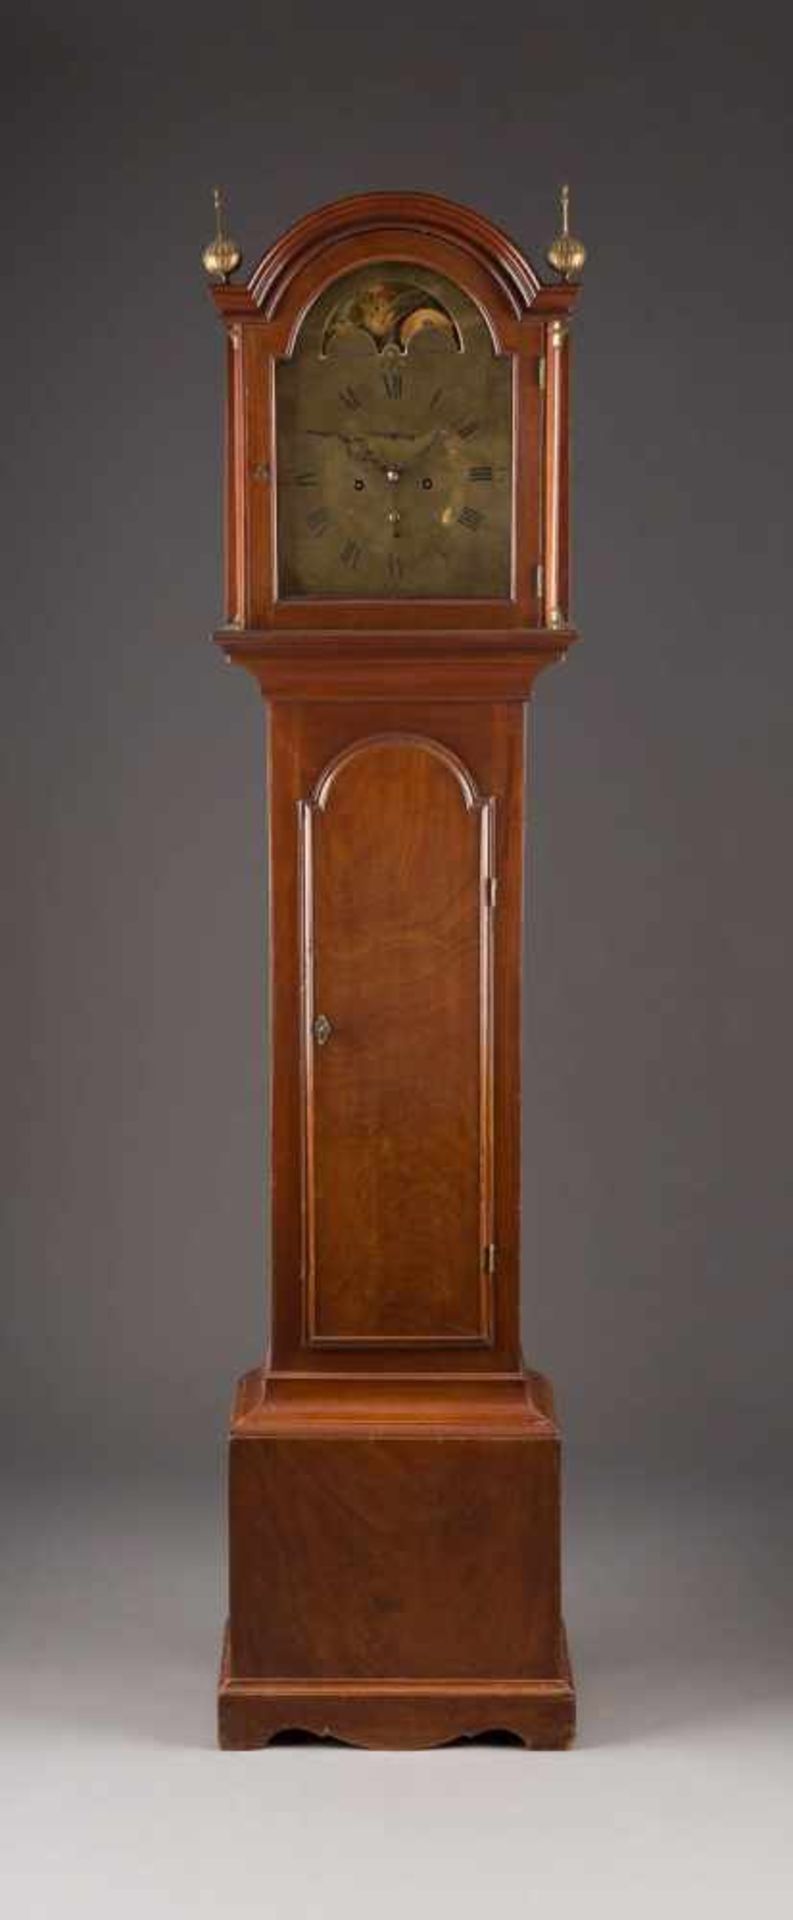 MEISTER-STANDUHR England, Ende 18. Jh. Mahagoni, furniert. H. 207 cm. Auf dem Uhrwerk bezeichnet '